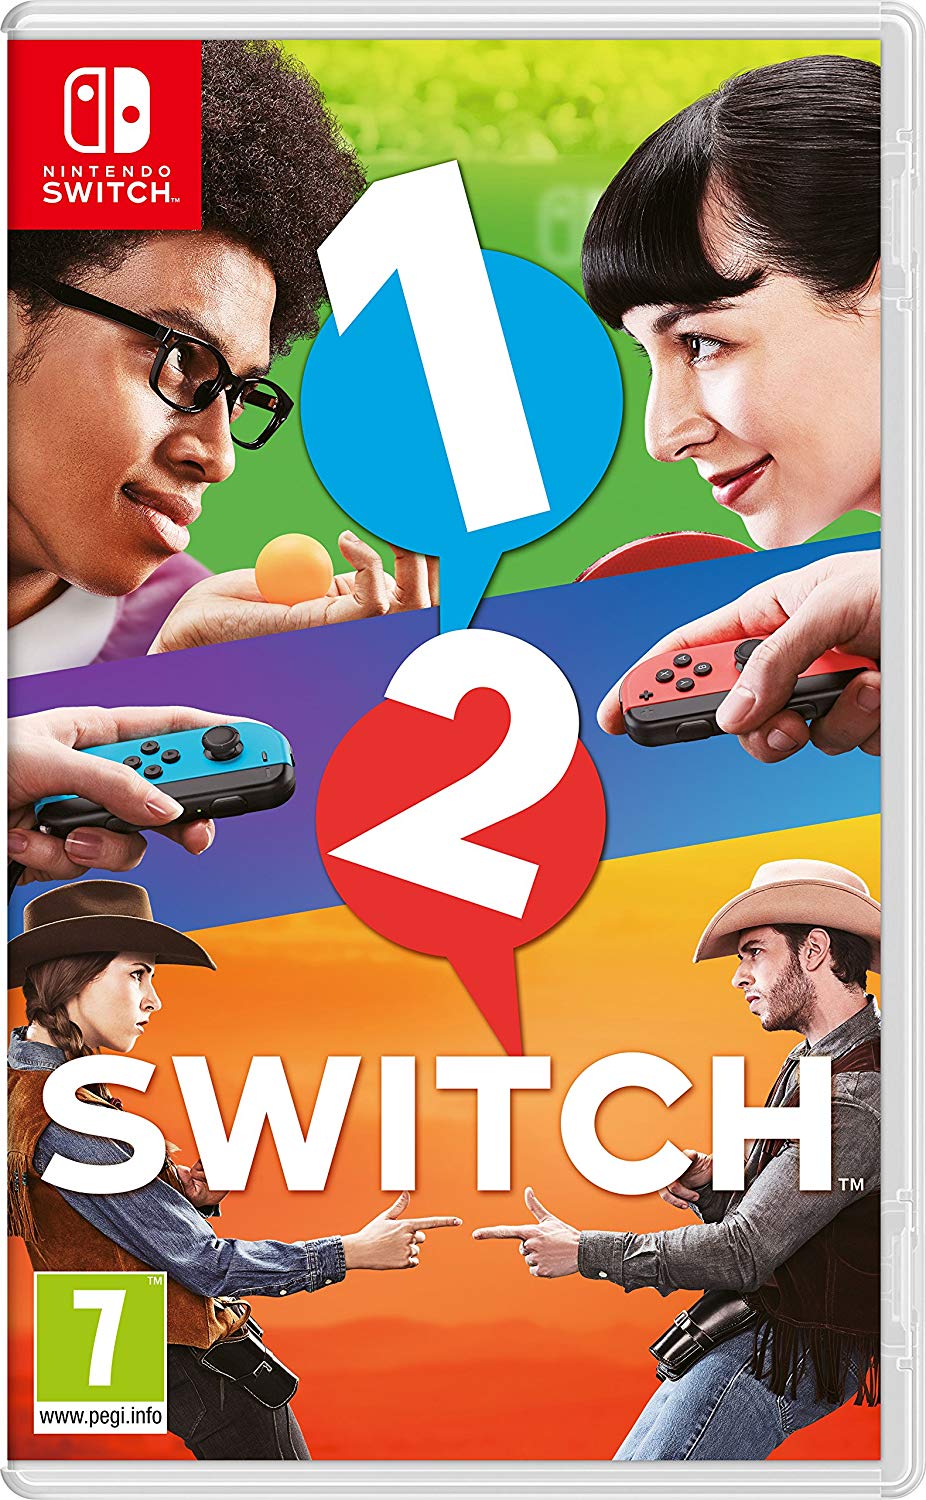 1-2-Switch Digital Download Key (Nintendo Switch)